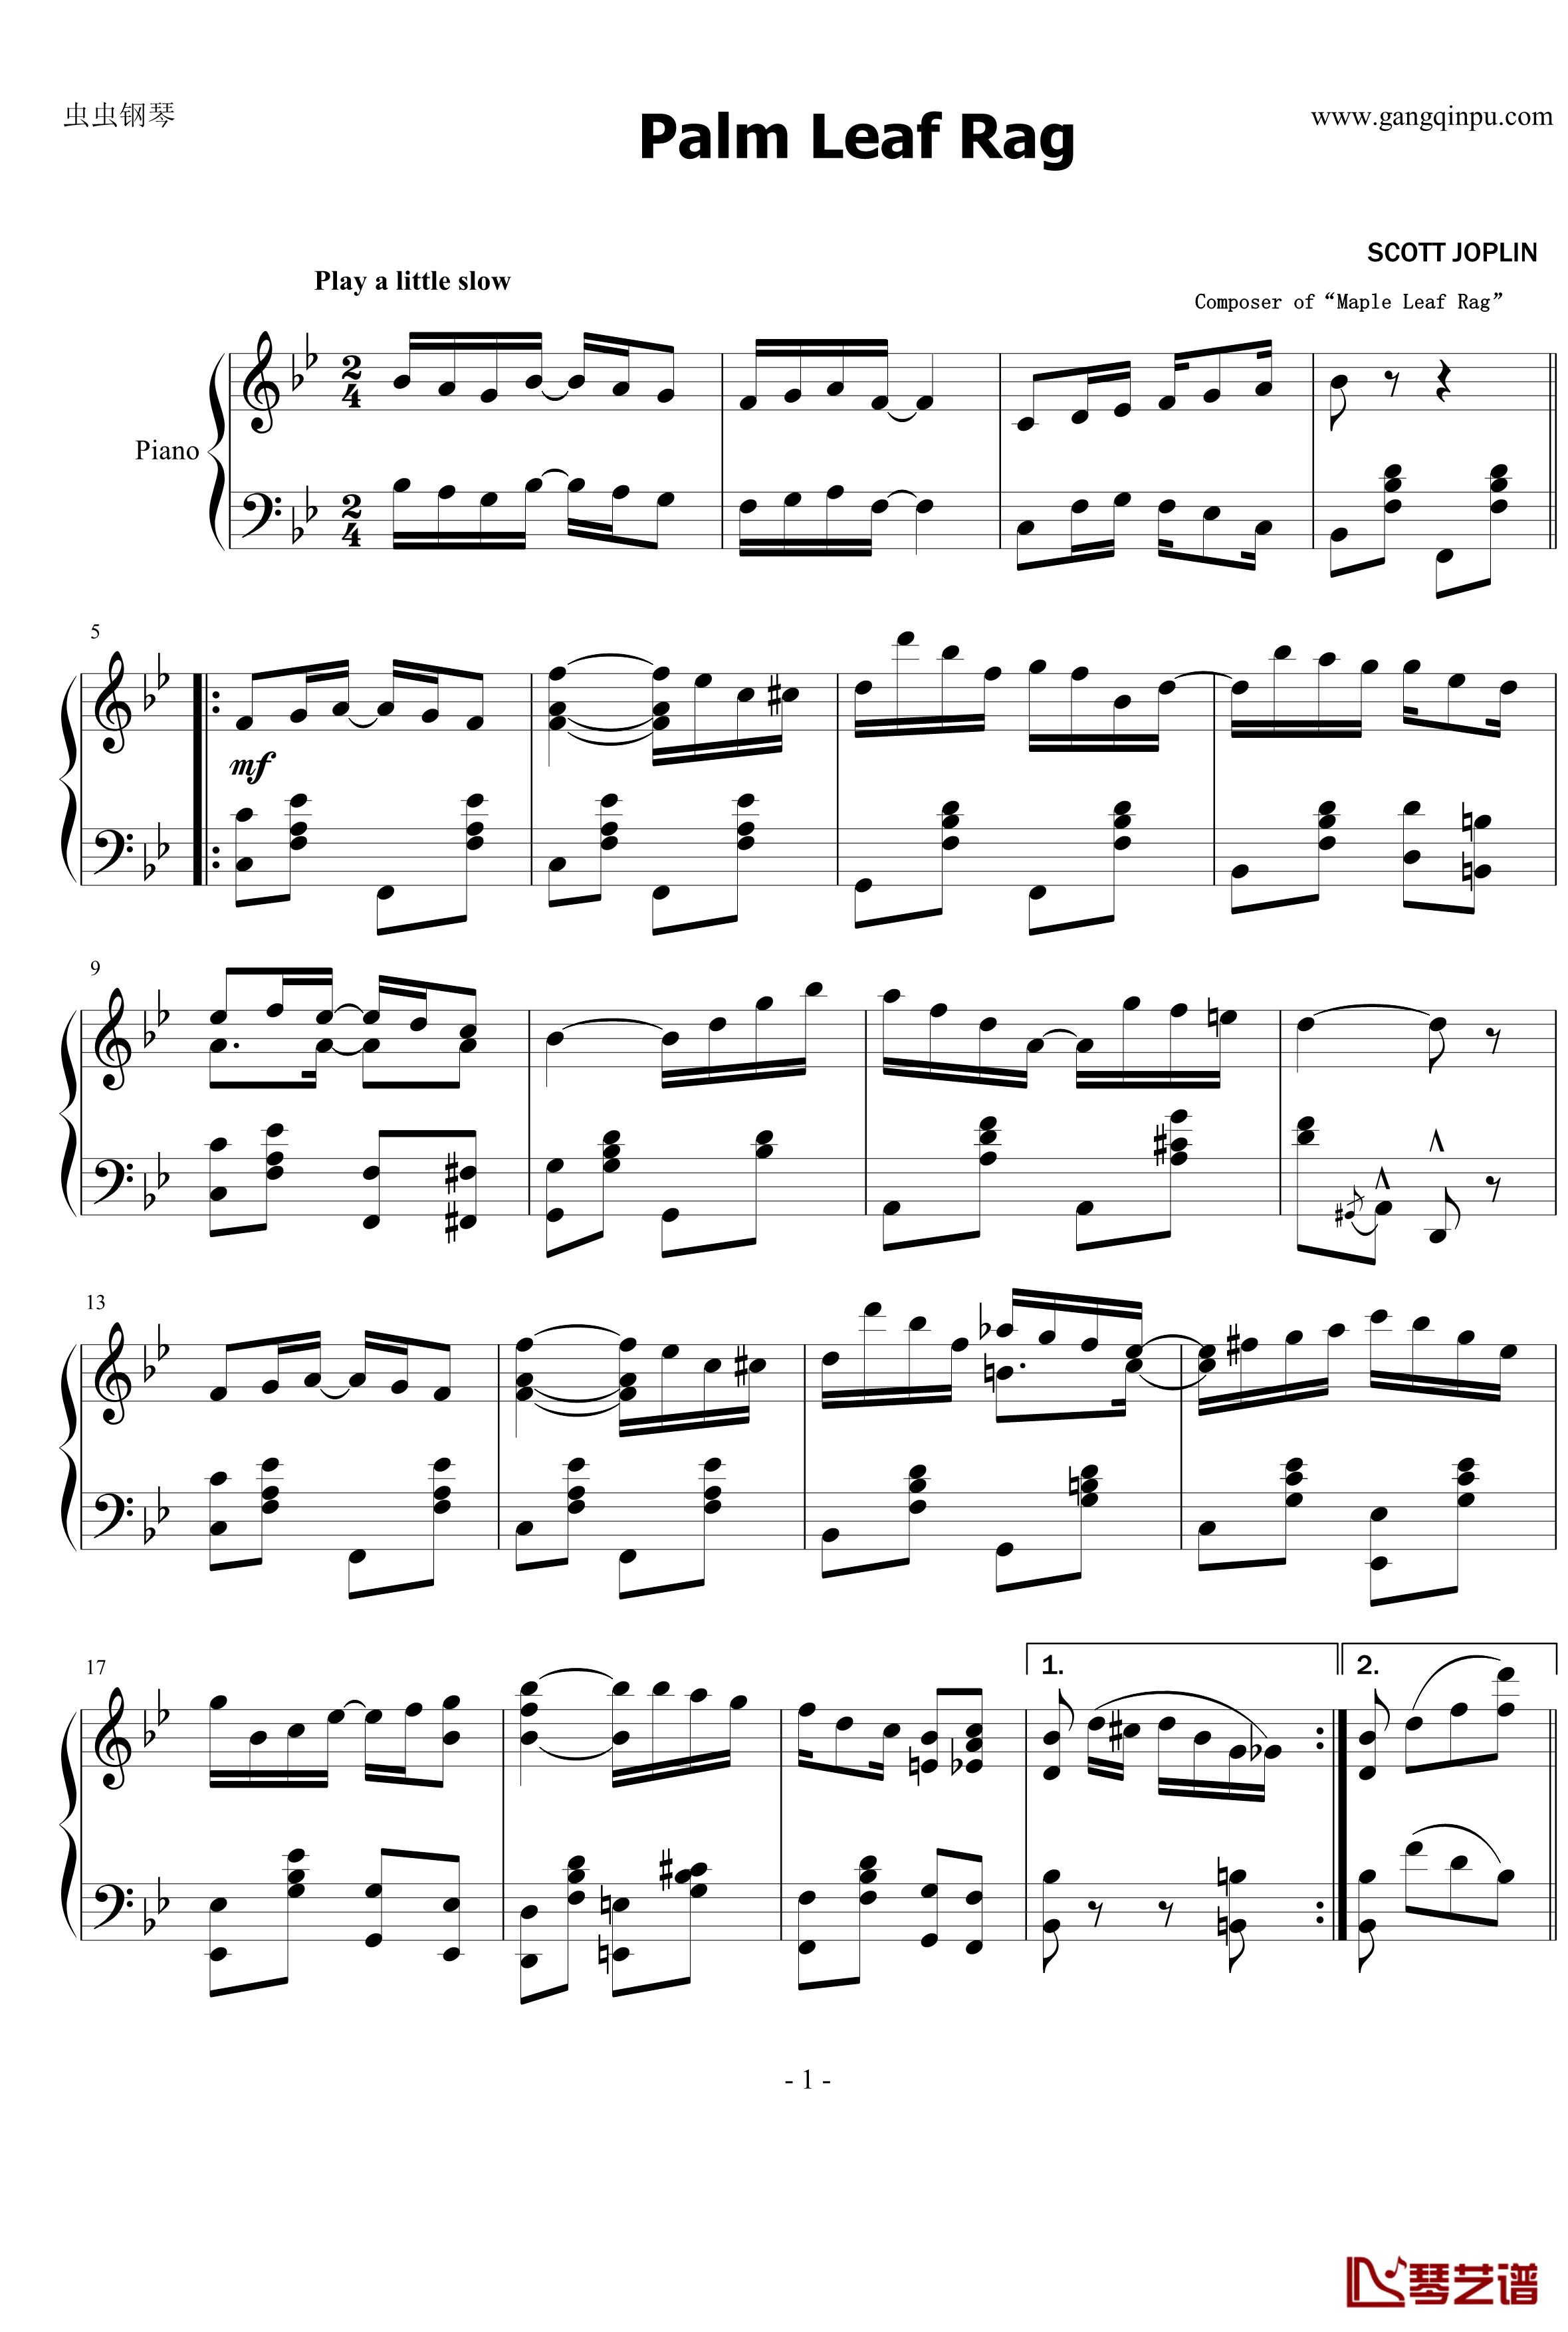 棕榈叶拉格钢琴谱-乔普林1